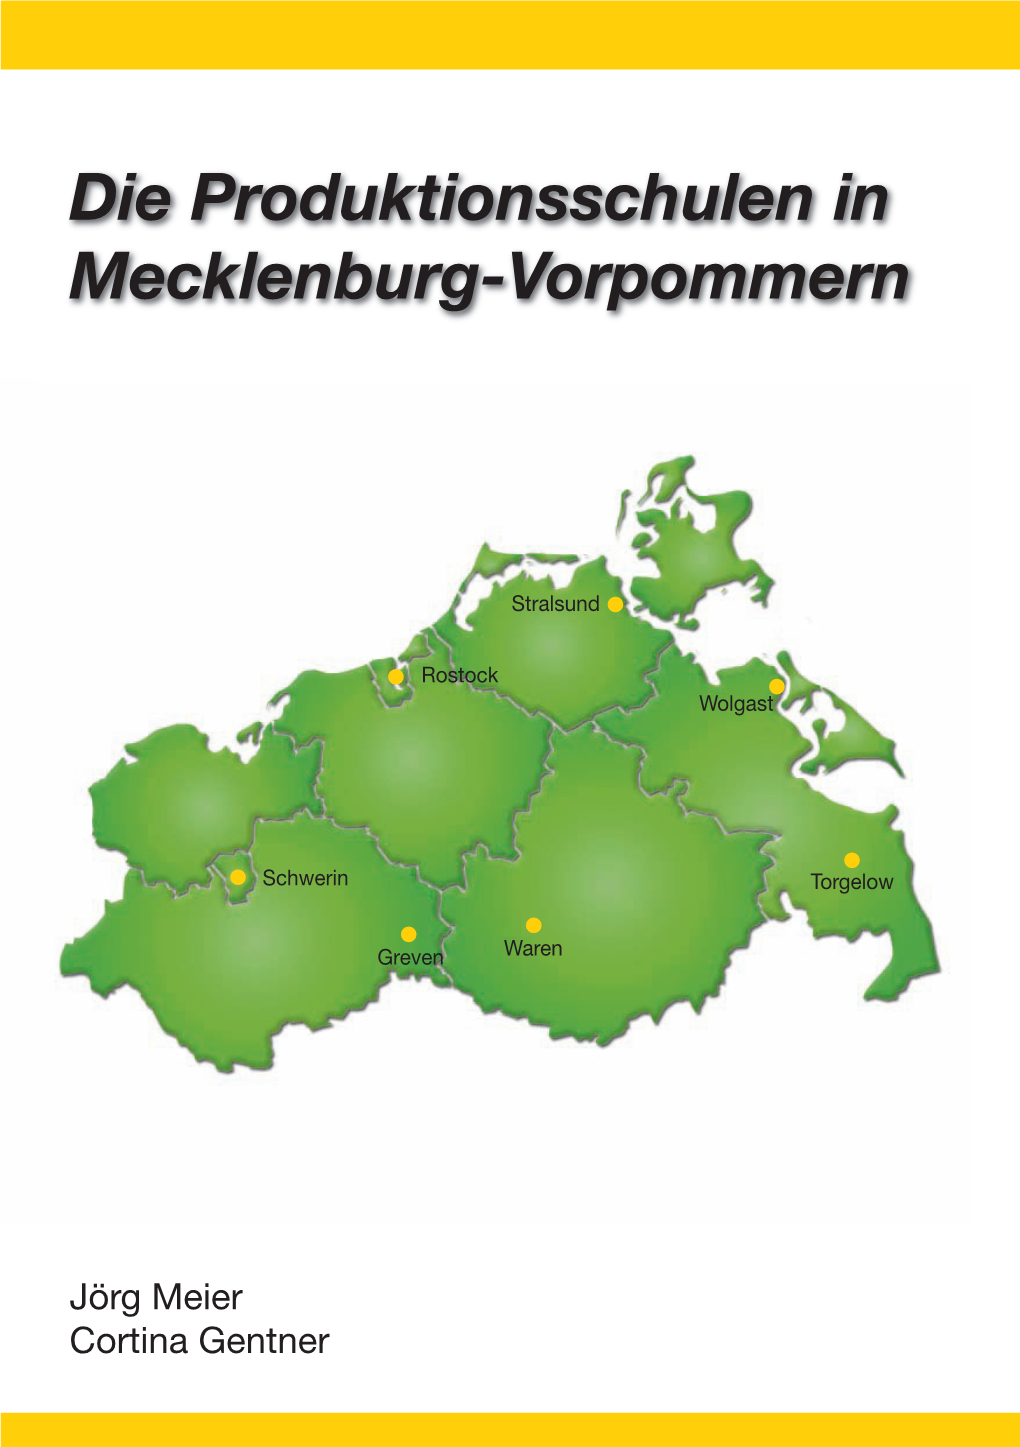 Die Produktionsschulen in Mecklenburg-Vorpommern